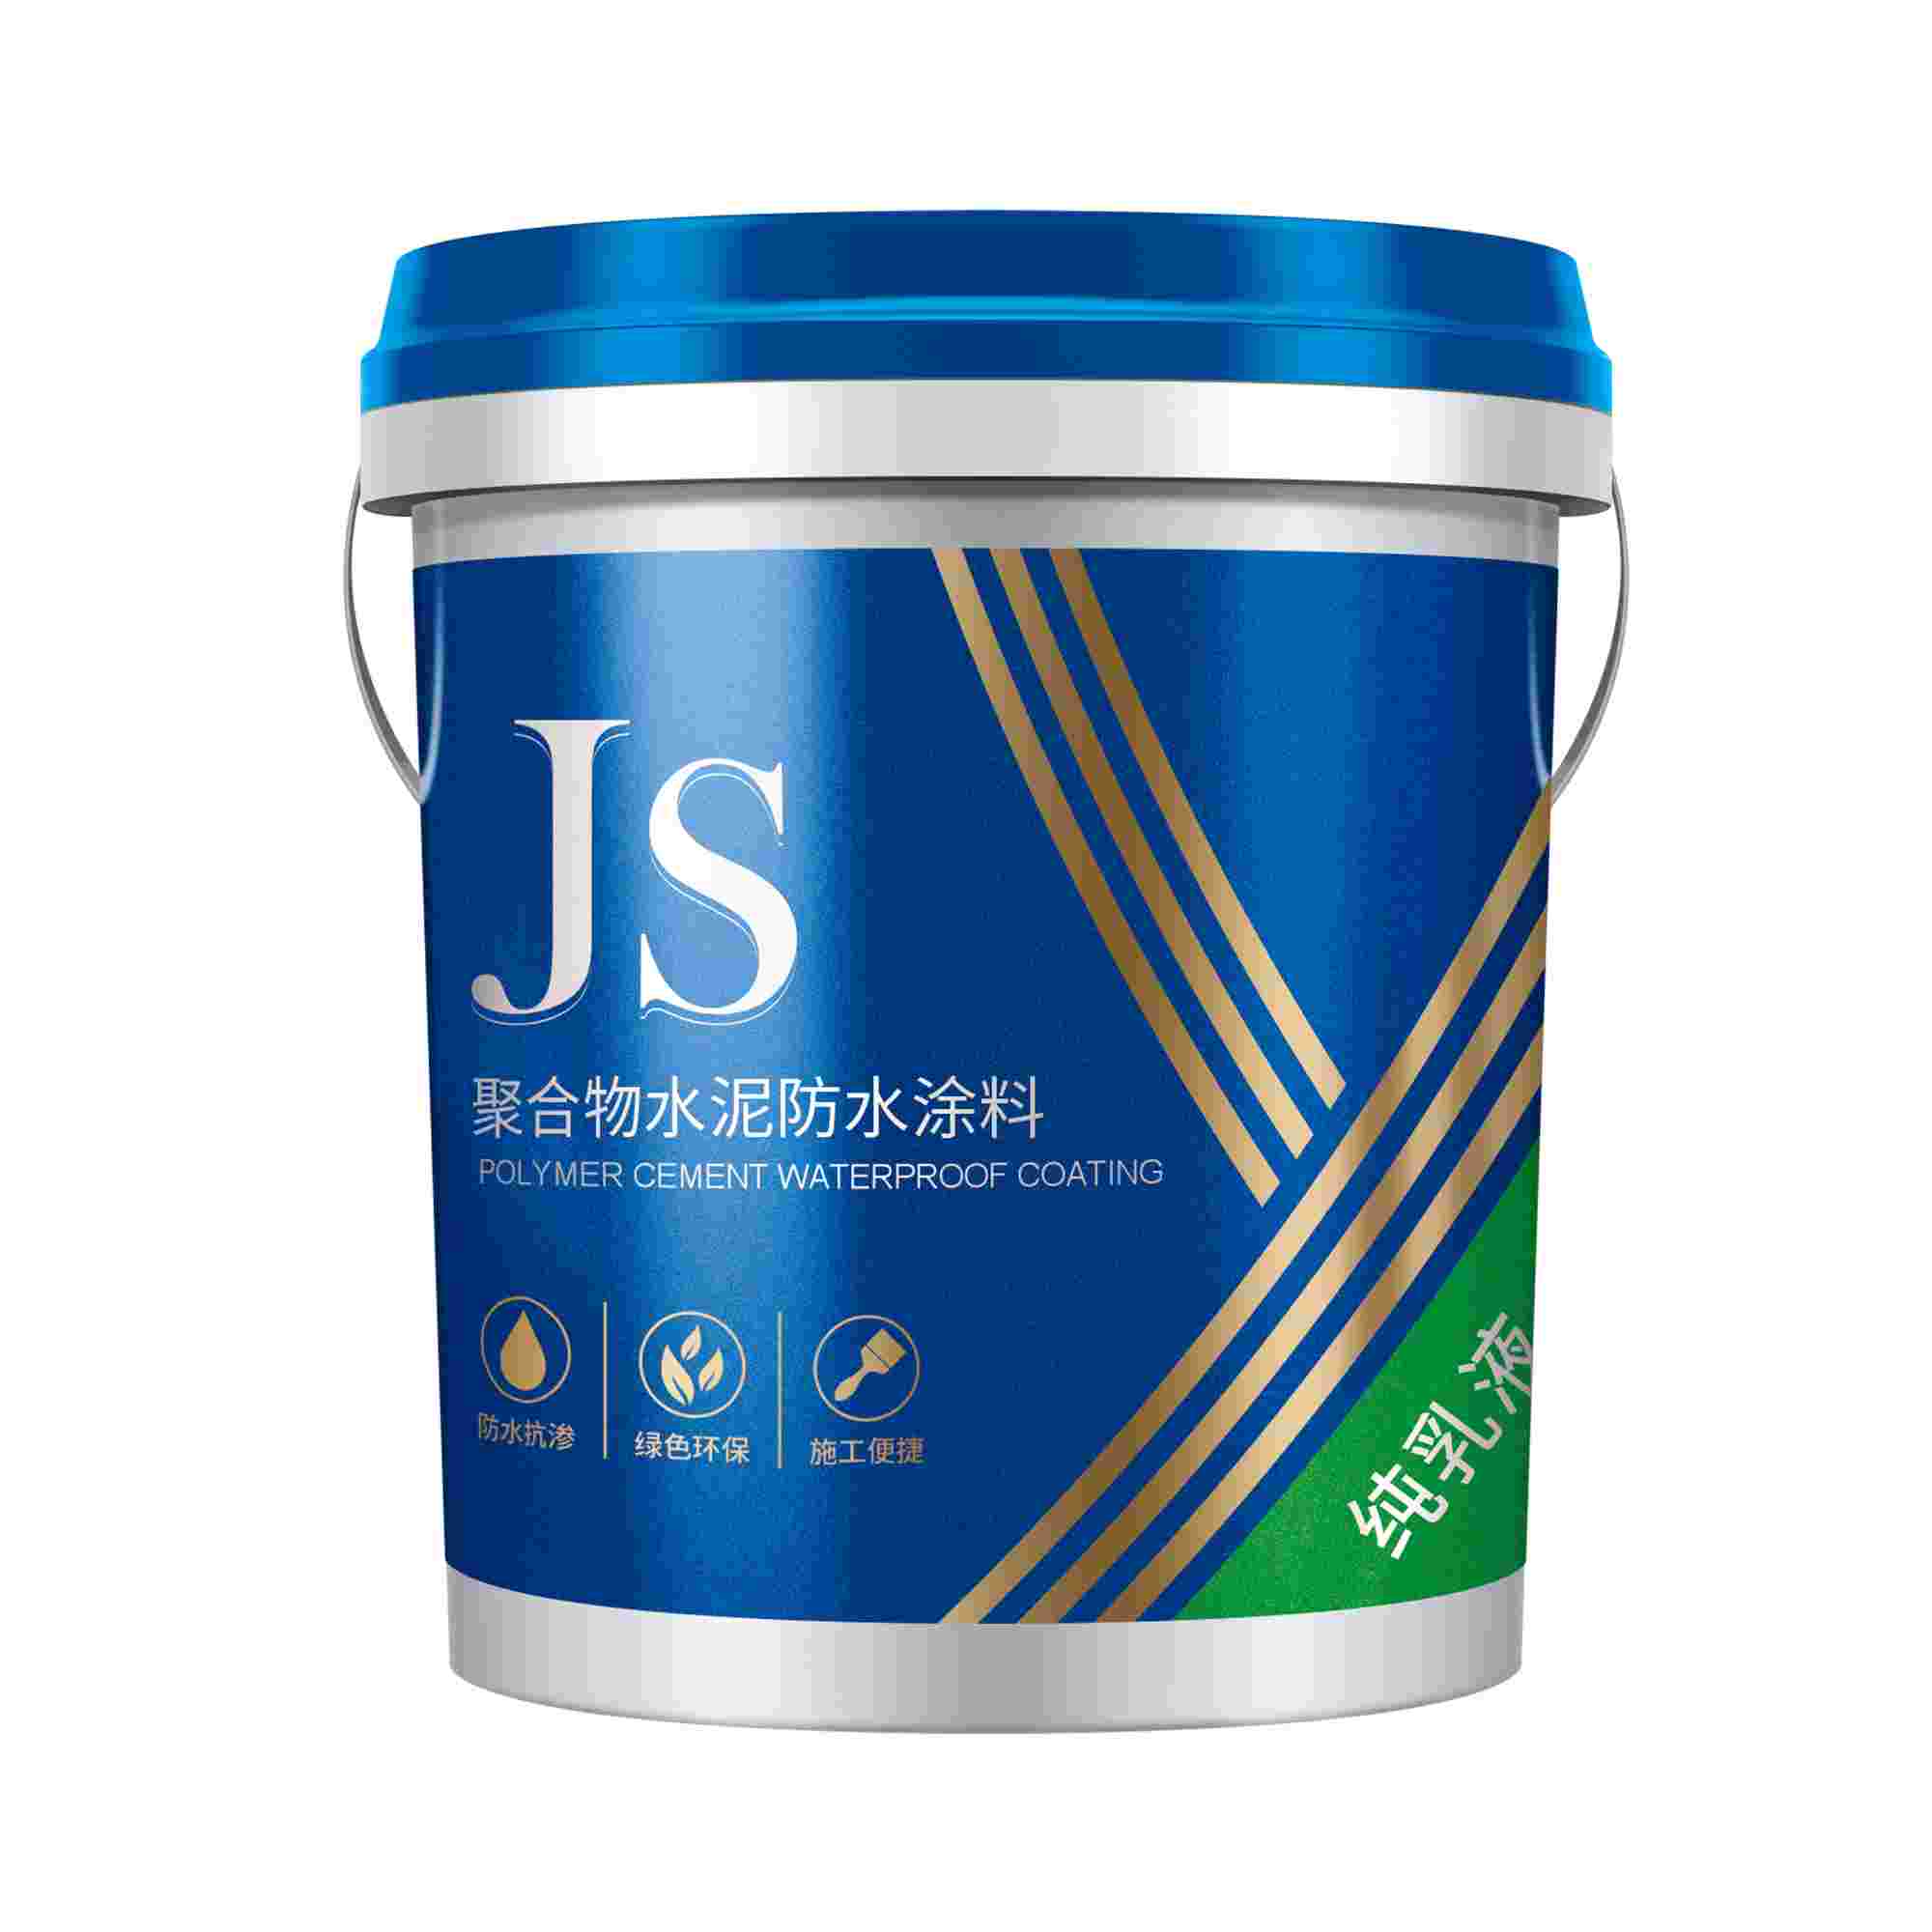 Js聚合物水泥防水涂料-双-企标